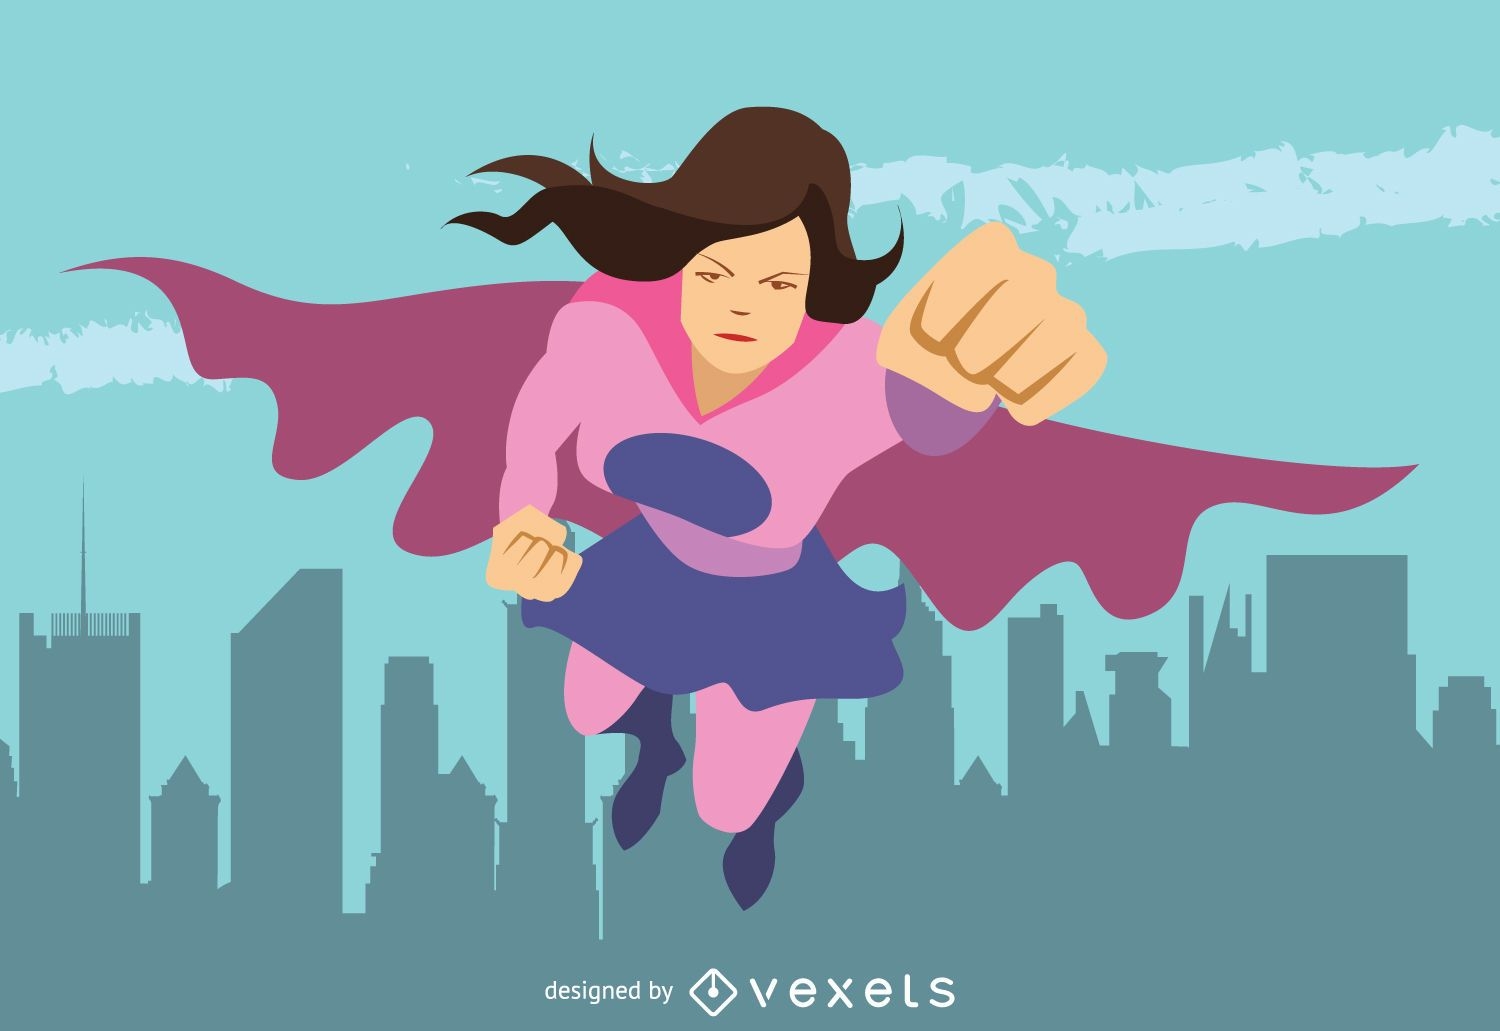 Vetores de Conjunto De Super Heroína e mais imagens de Super-herói - Super-herói,  Sexo Feminino, Mulheres - iStock